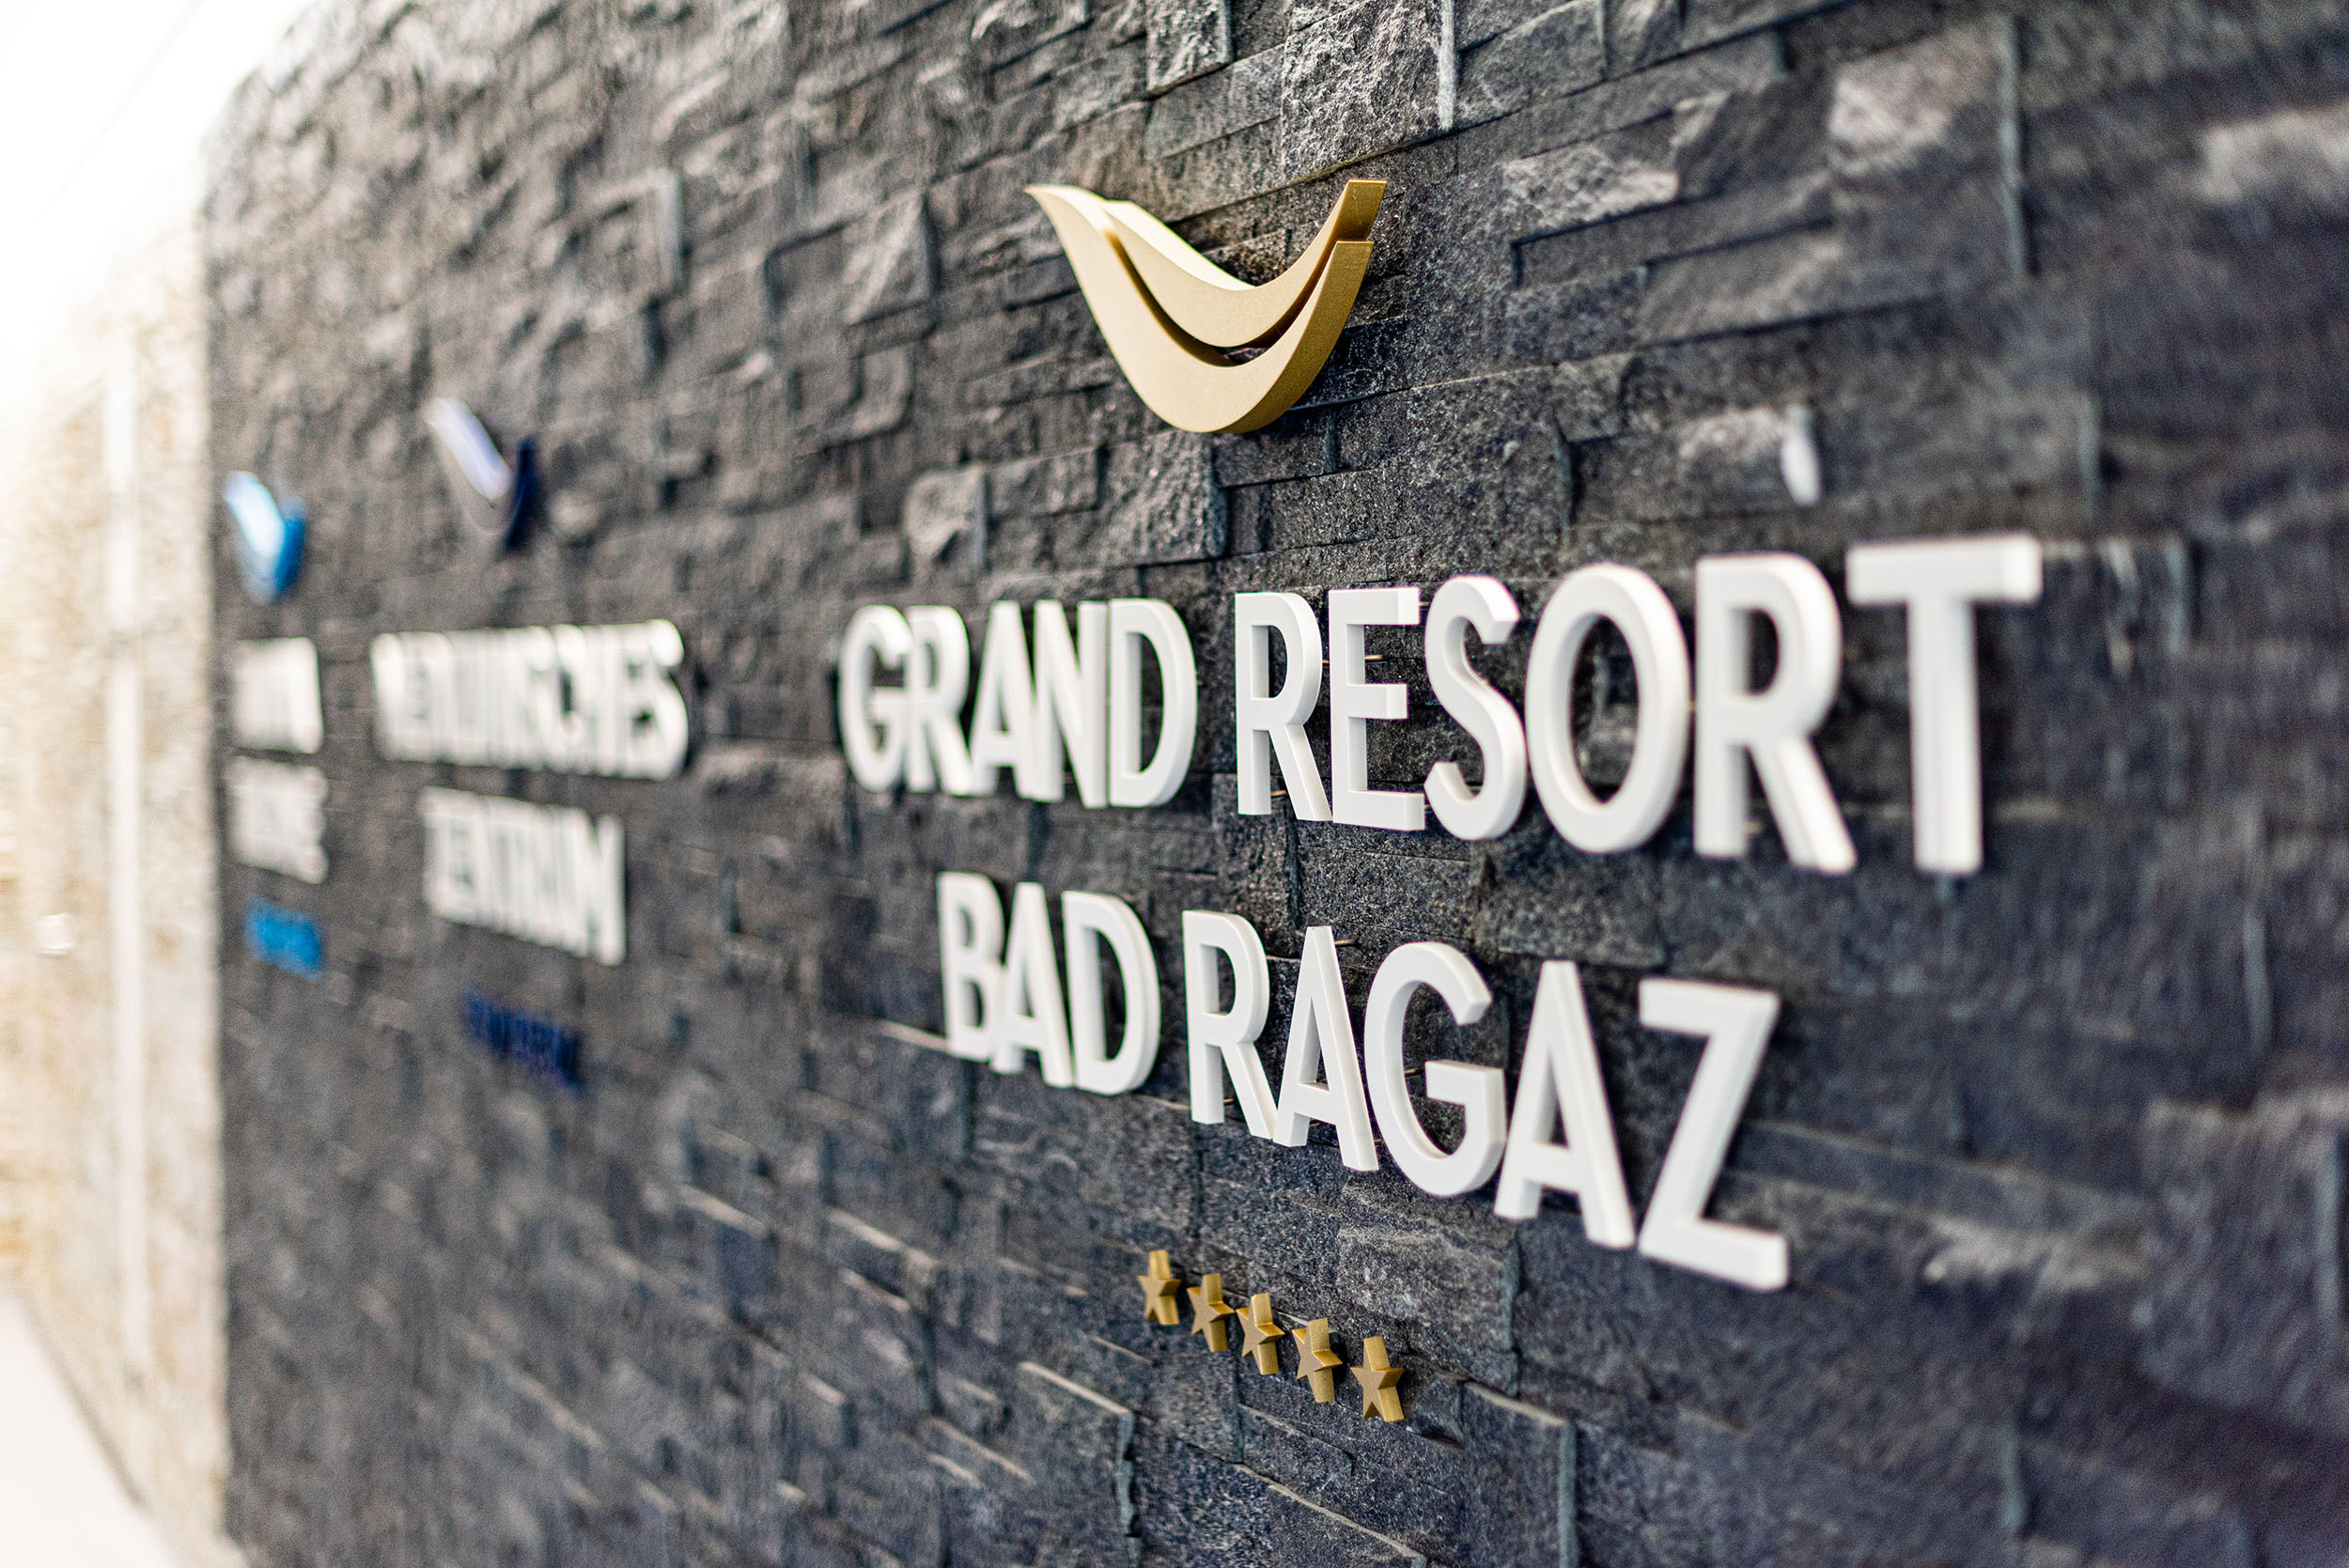 Signaletik Grand Resort Bad Ragaz auf Wandverblendung aus Naturstein